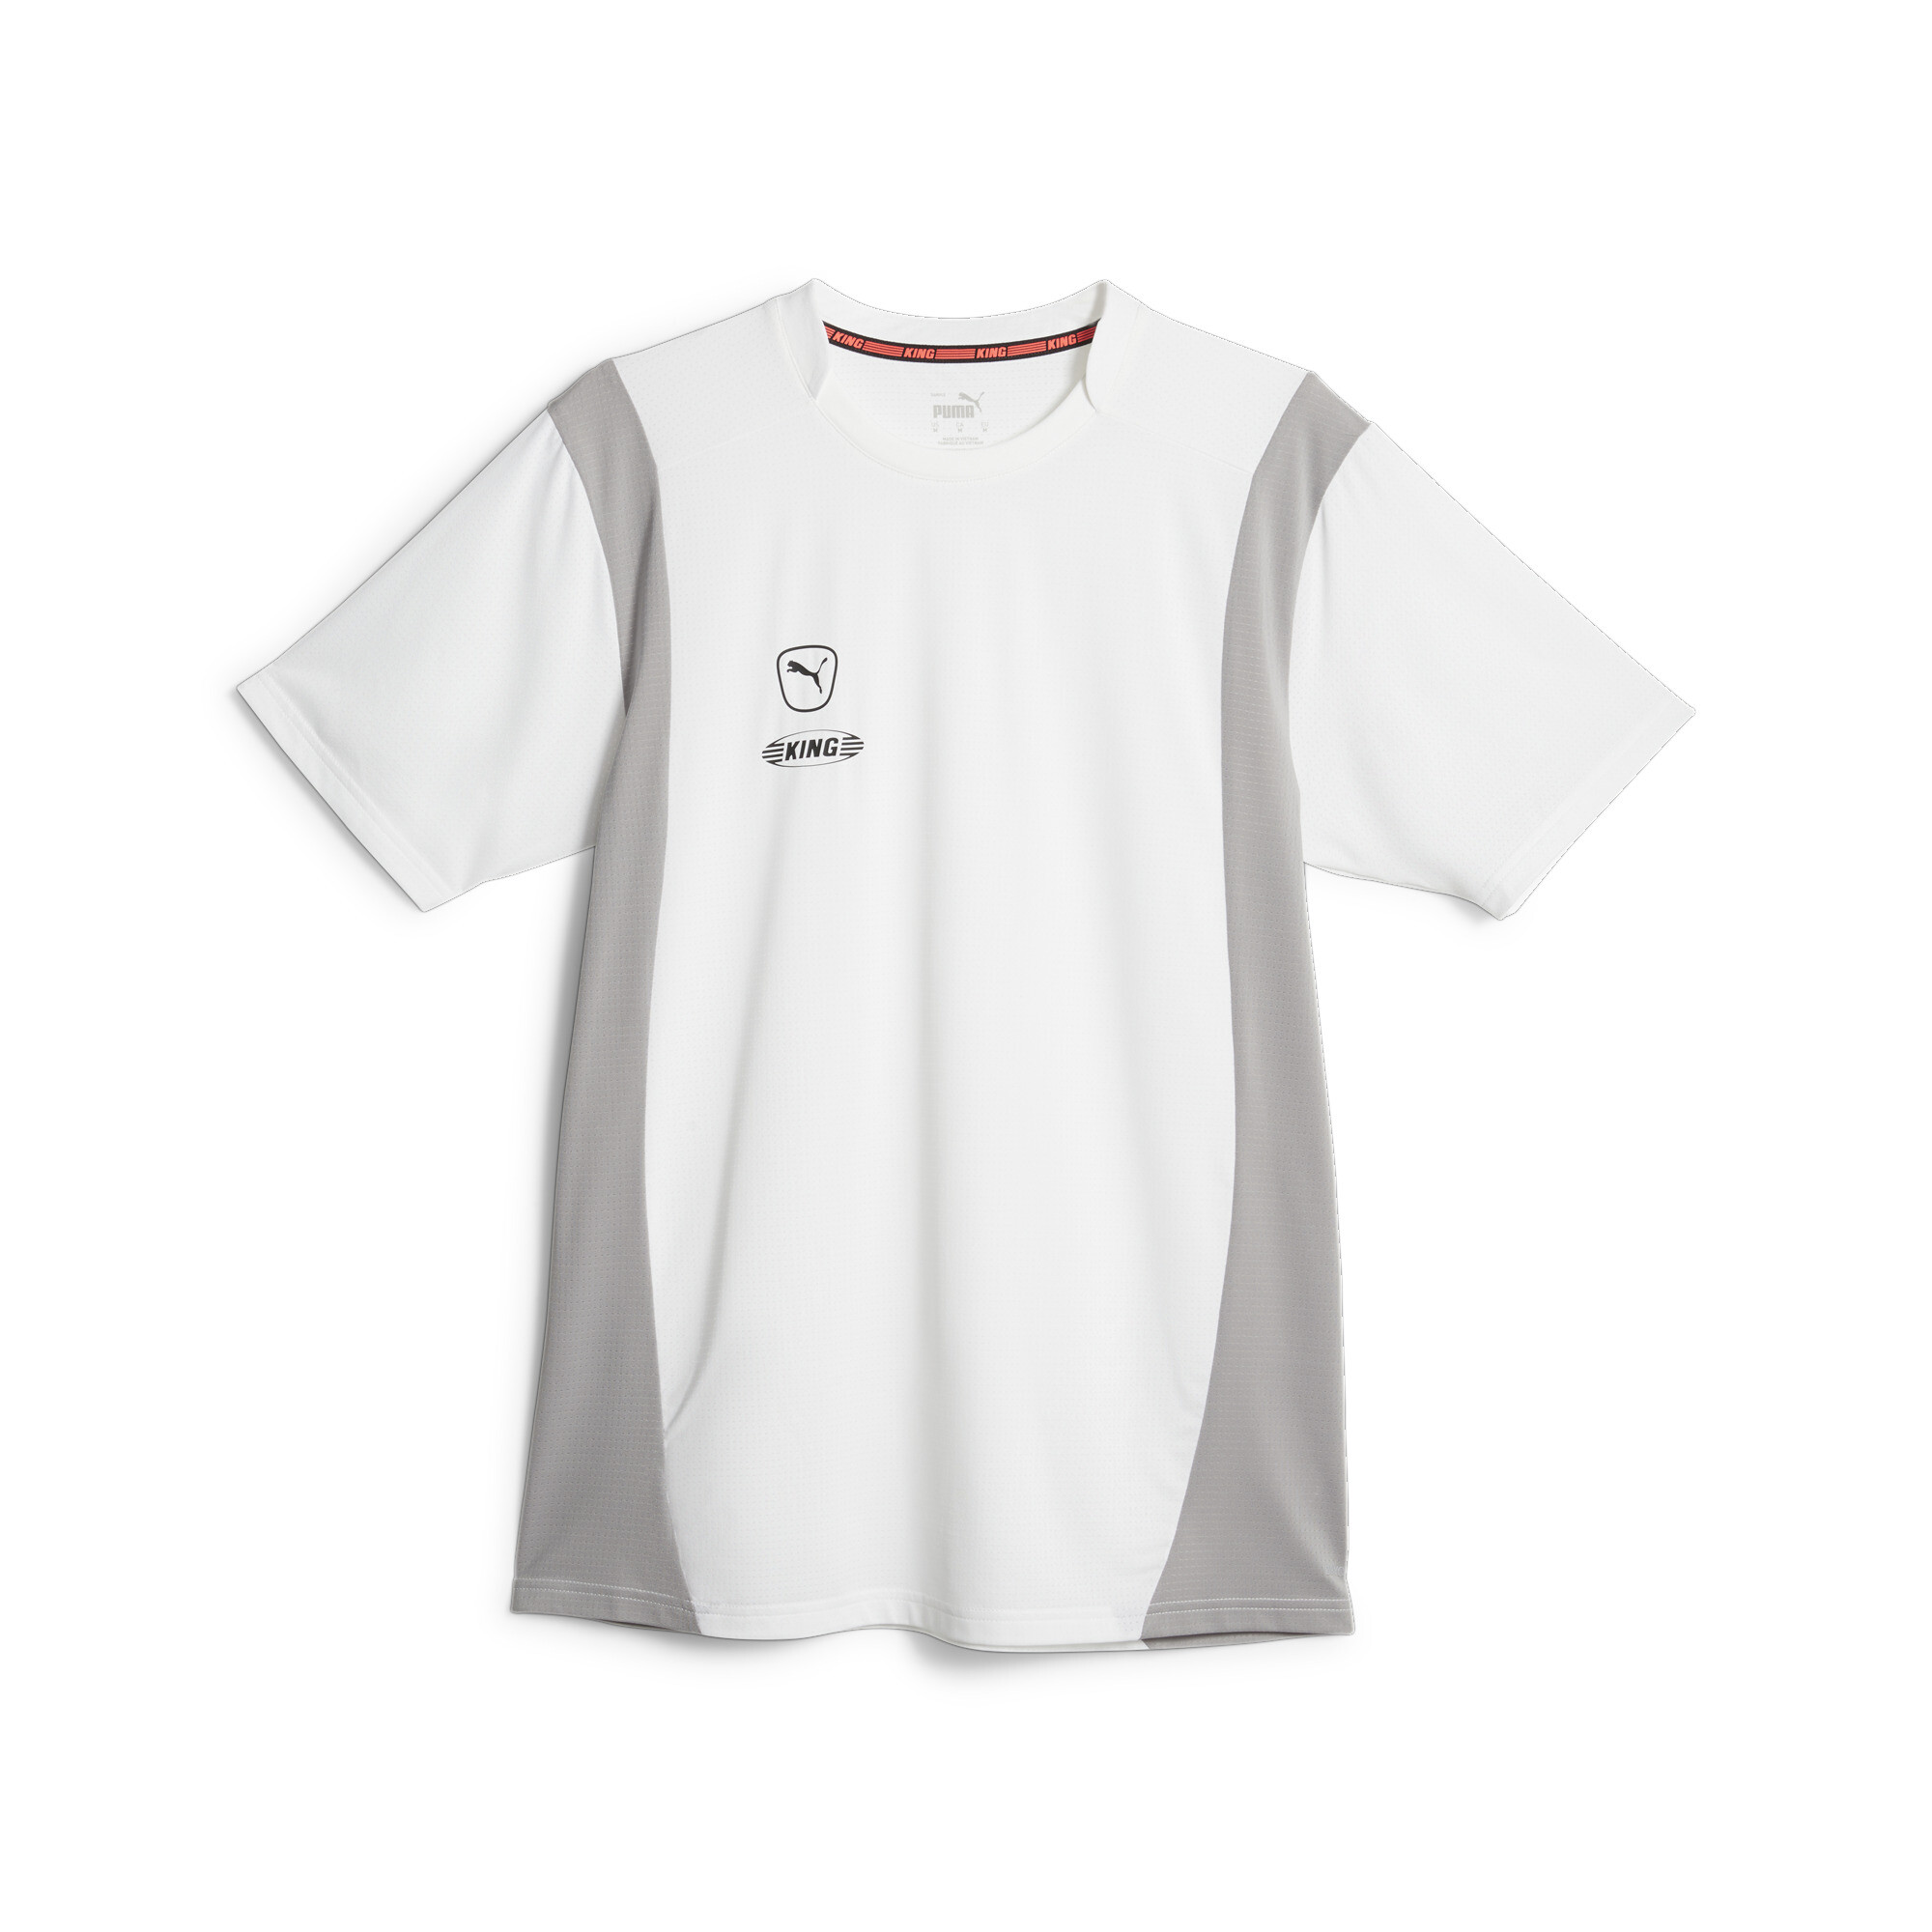 プーマ メンズ サッカー キング プロ Tシャツ メンズ PUMA White-Concrete Gray ｜PUMA.com画像